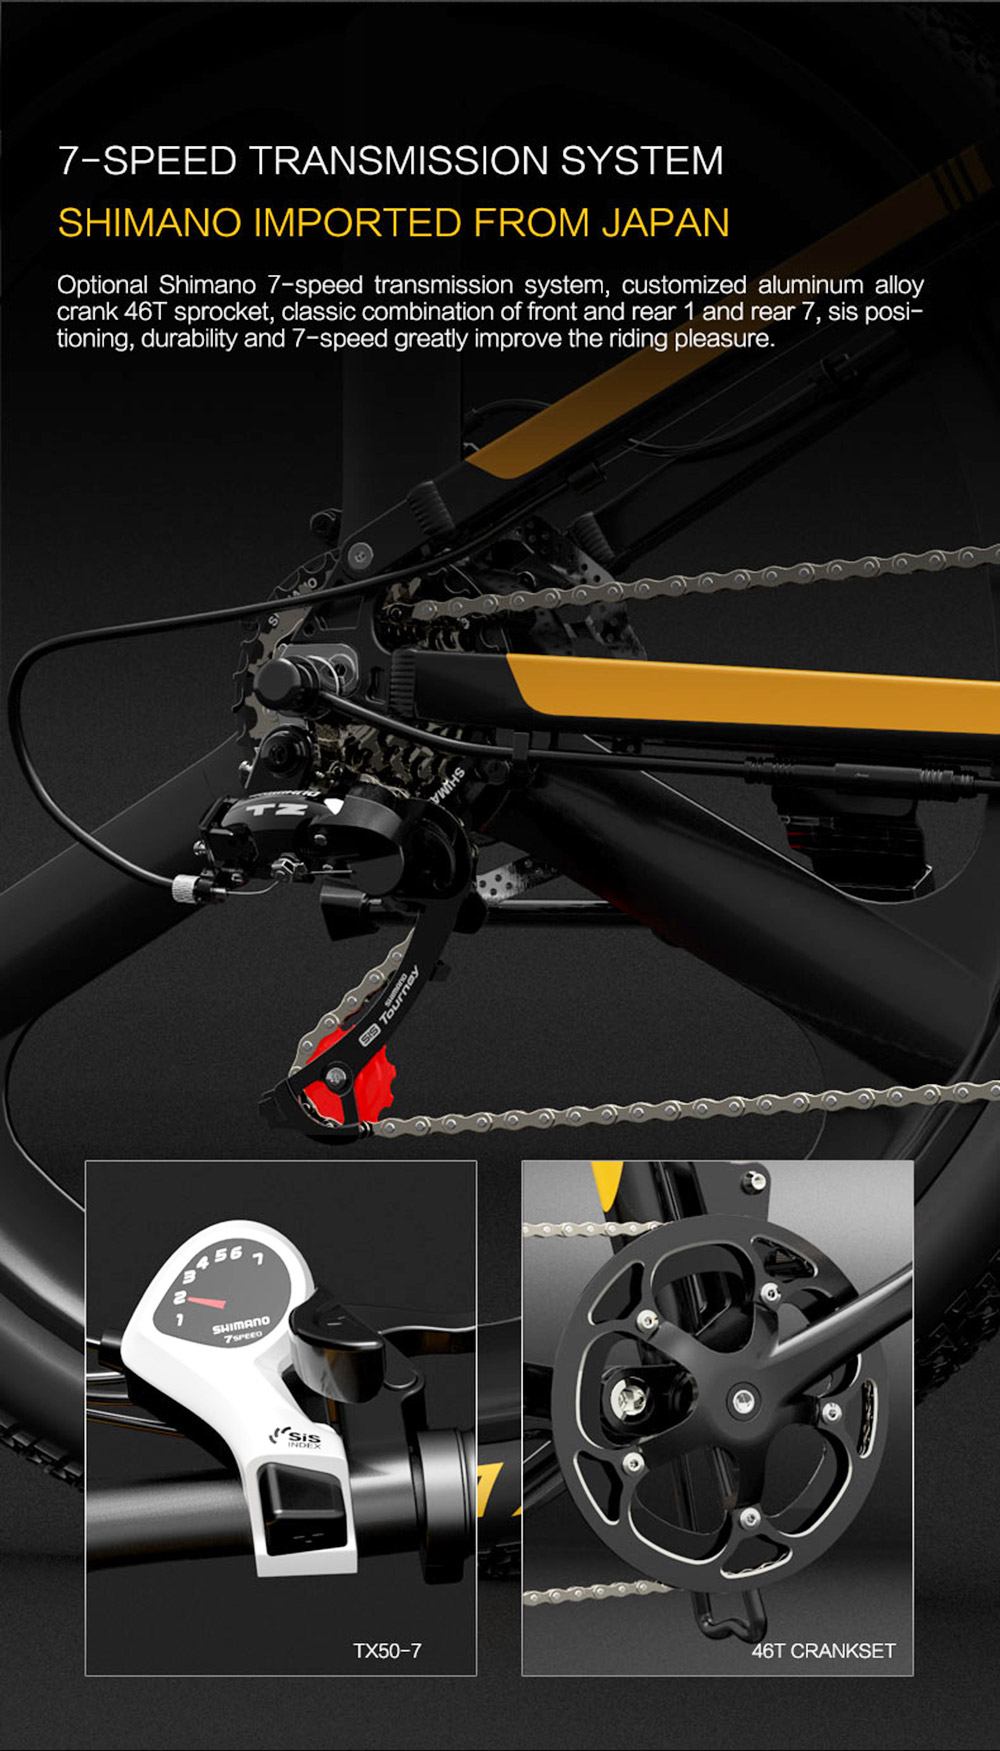 Vélo de montagne électrique pliant BEZIOR X500 PRO noir gris